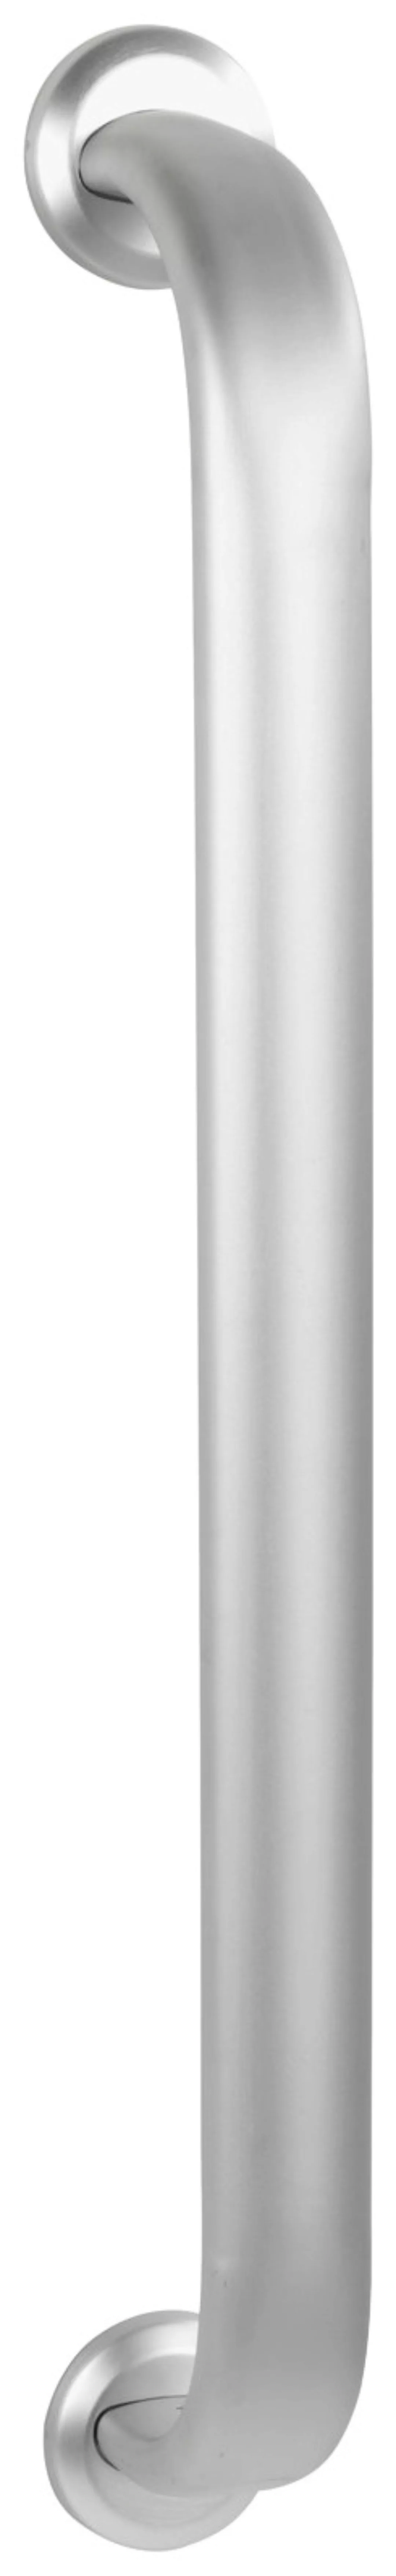 WENKO Wandhaltegriff Secura Premium 63 cm, bis 120 kg belastbar silber matt günstig online kaufen